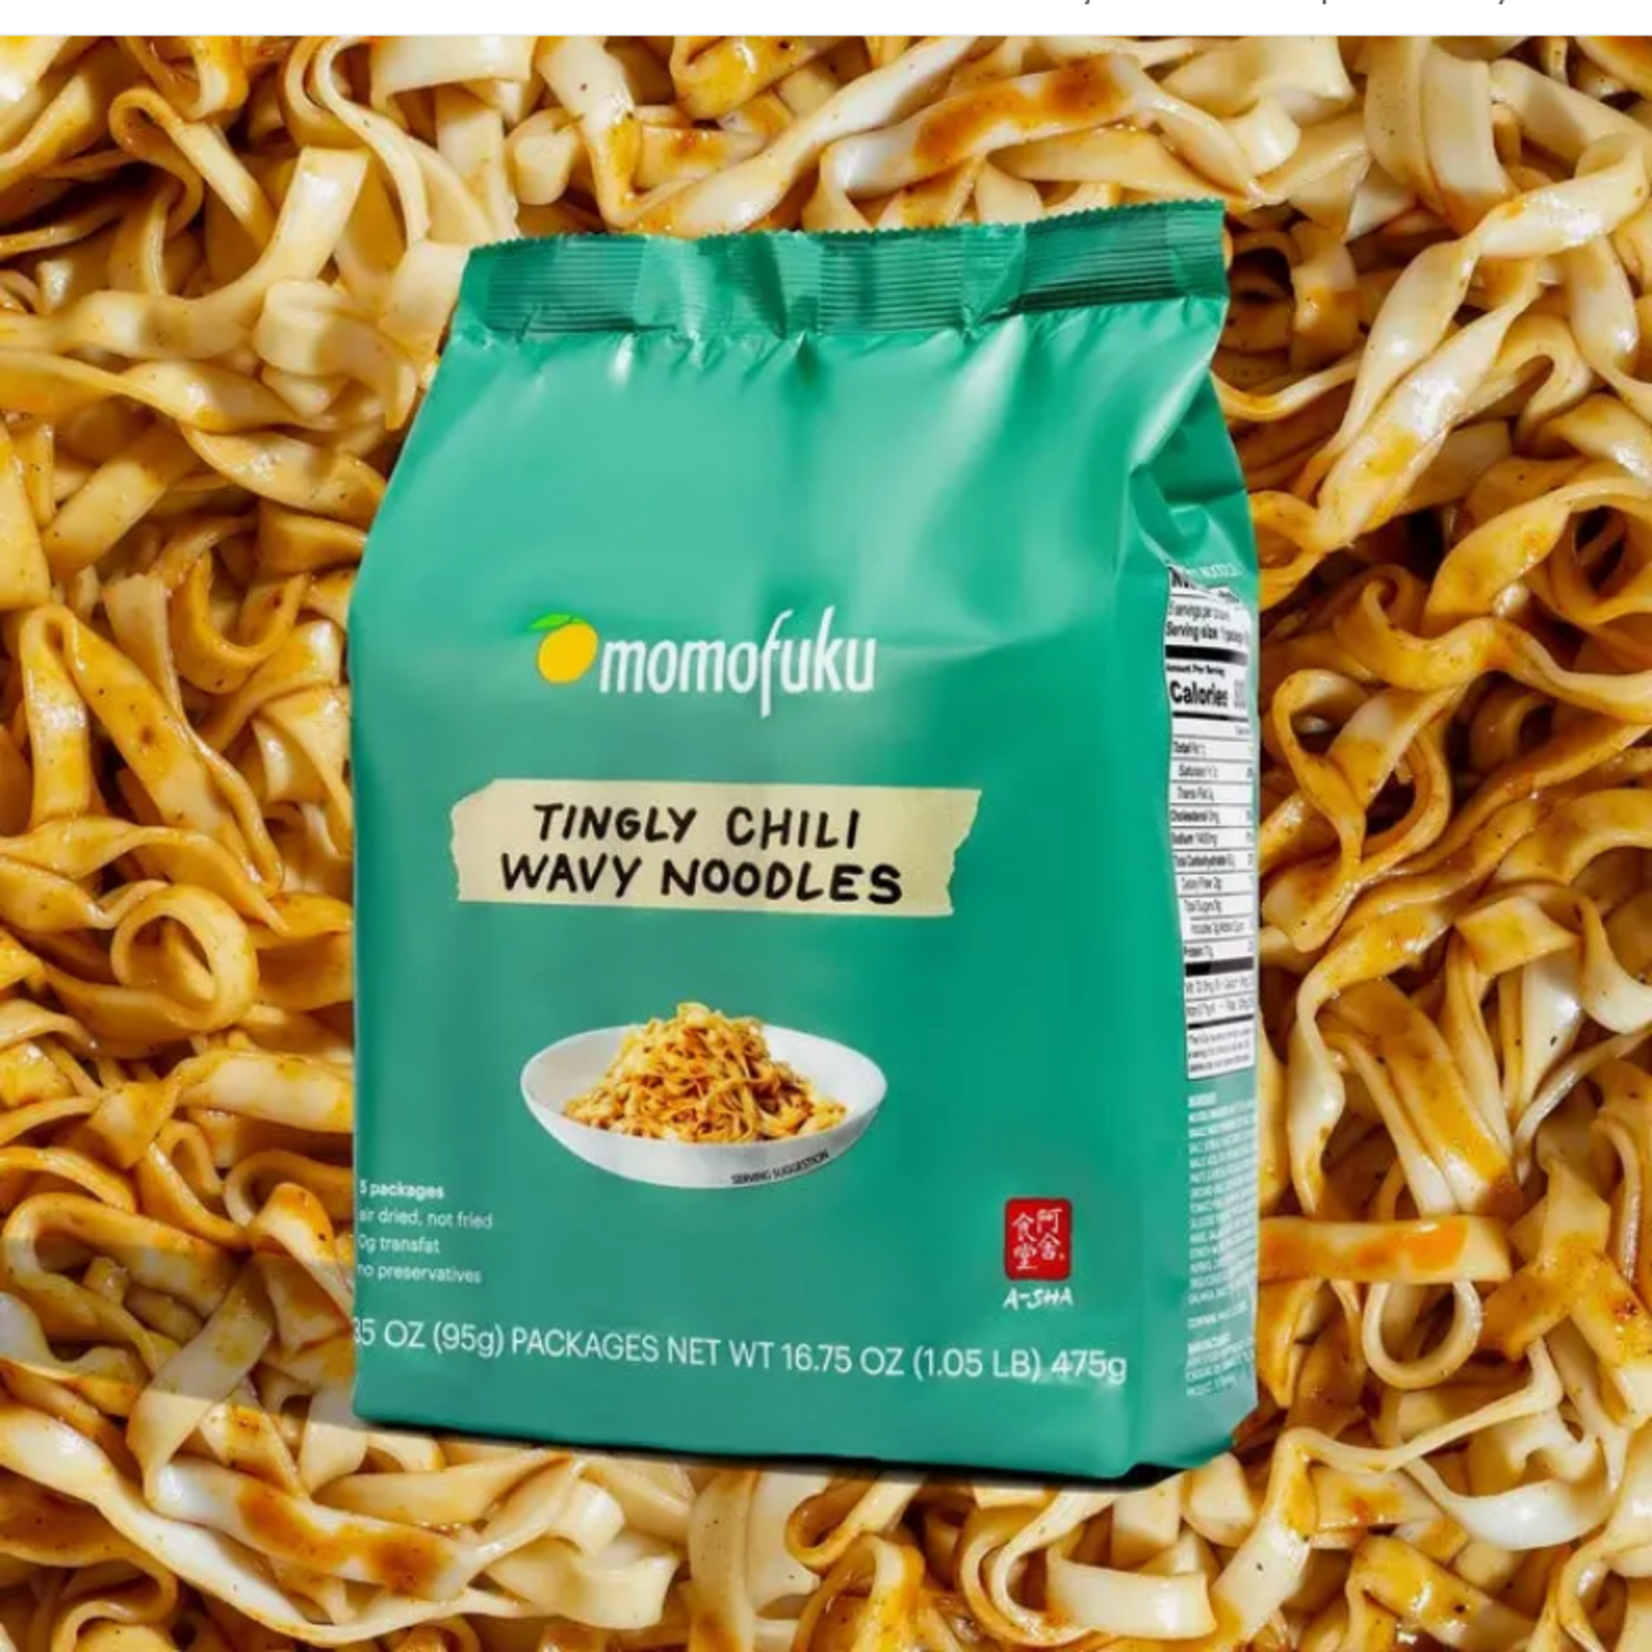 Momofuku Tingly Chili Noodles